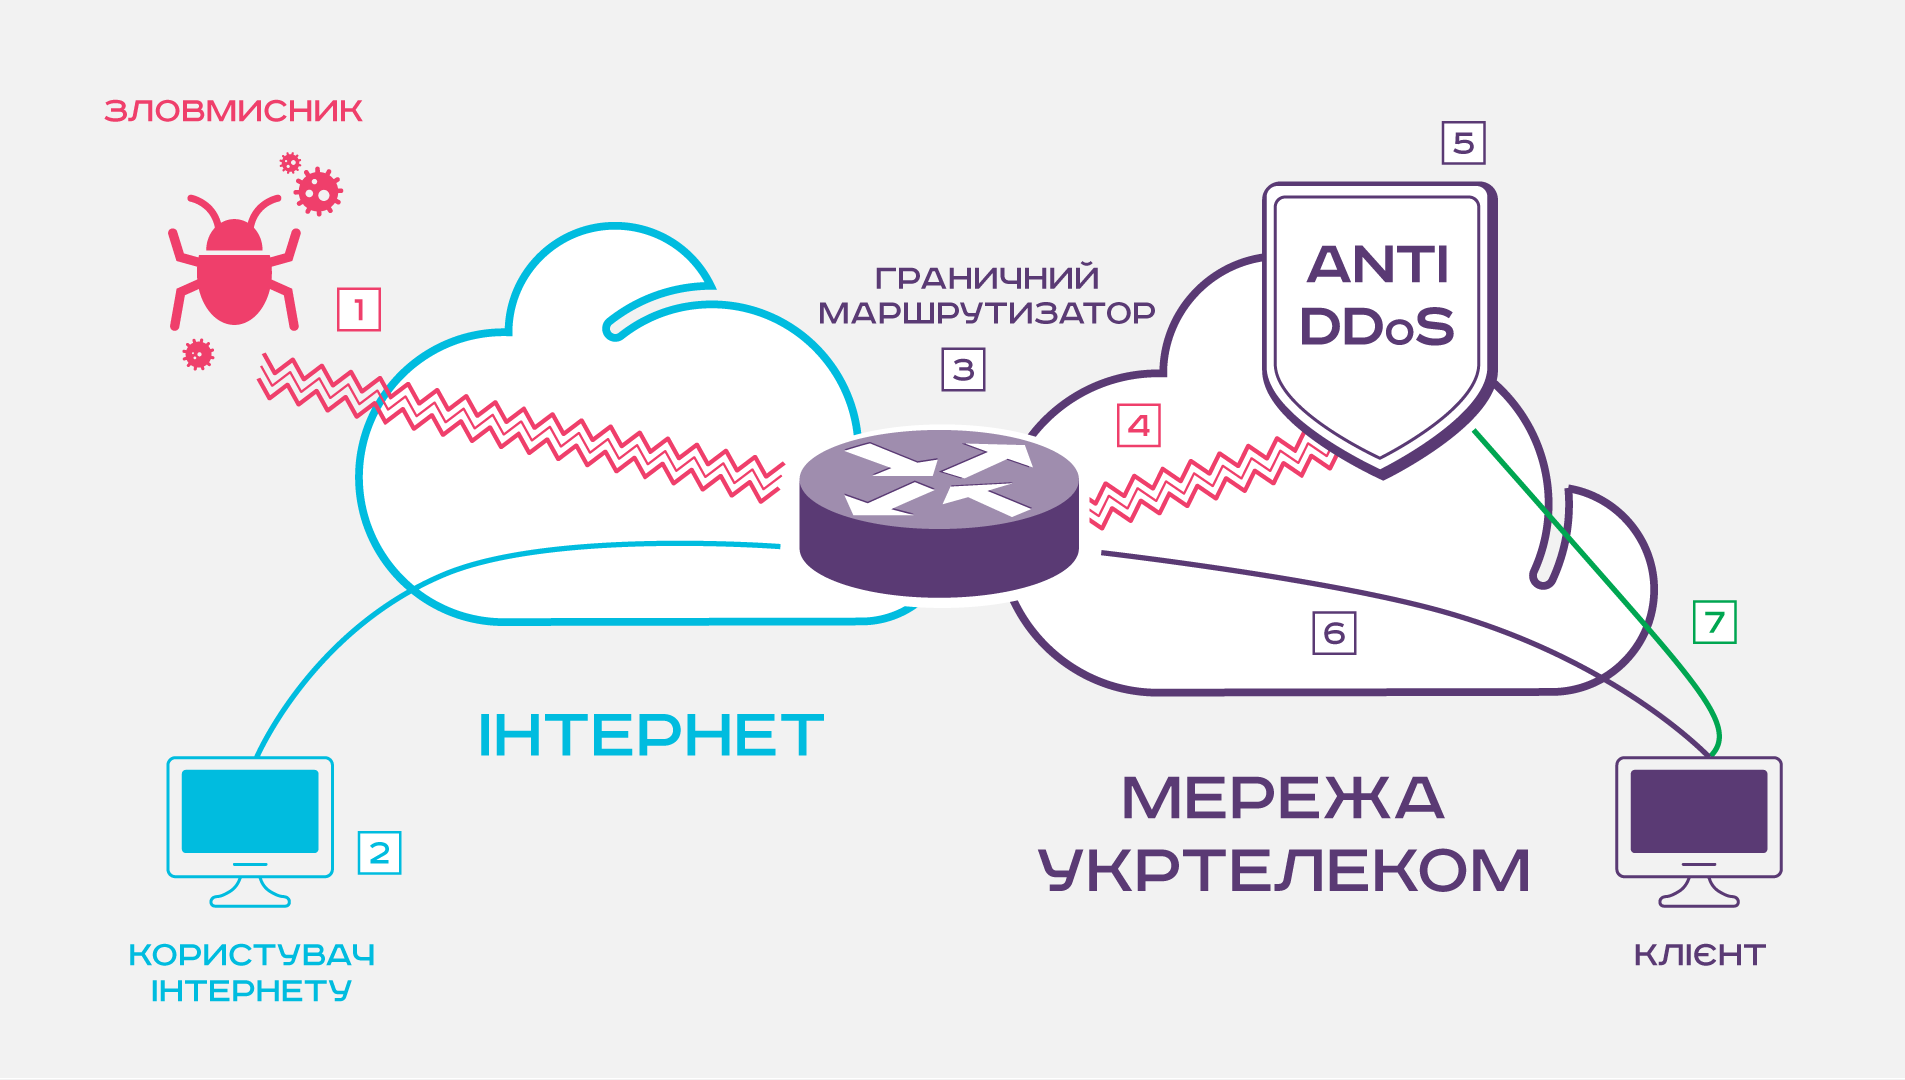 ukrtelecom-ddos-protect-1.png